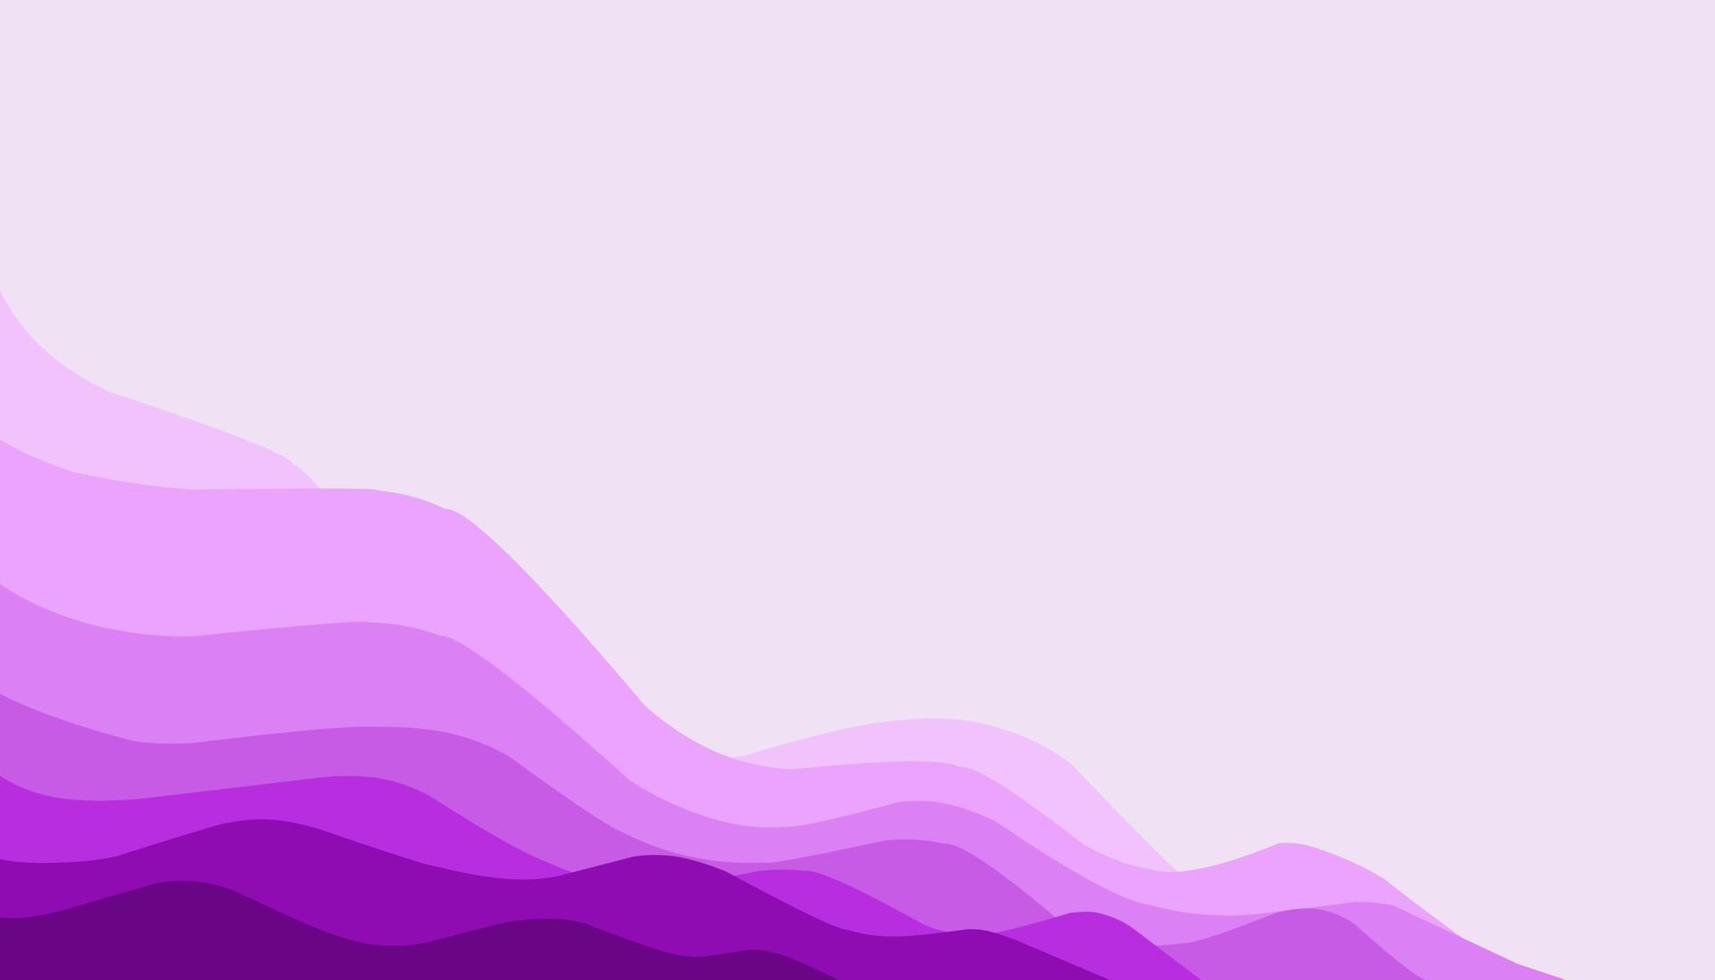 abstrakt bakgrund illustration av lila vågor vektor